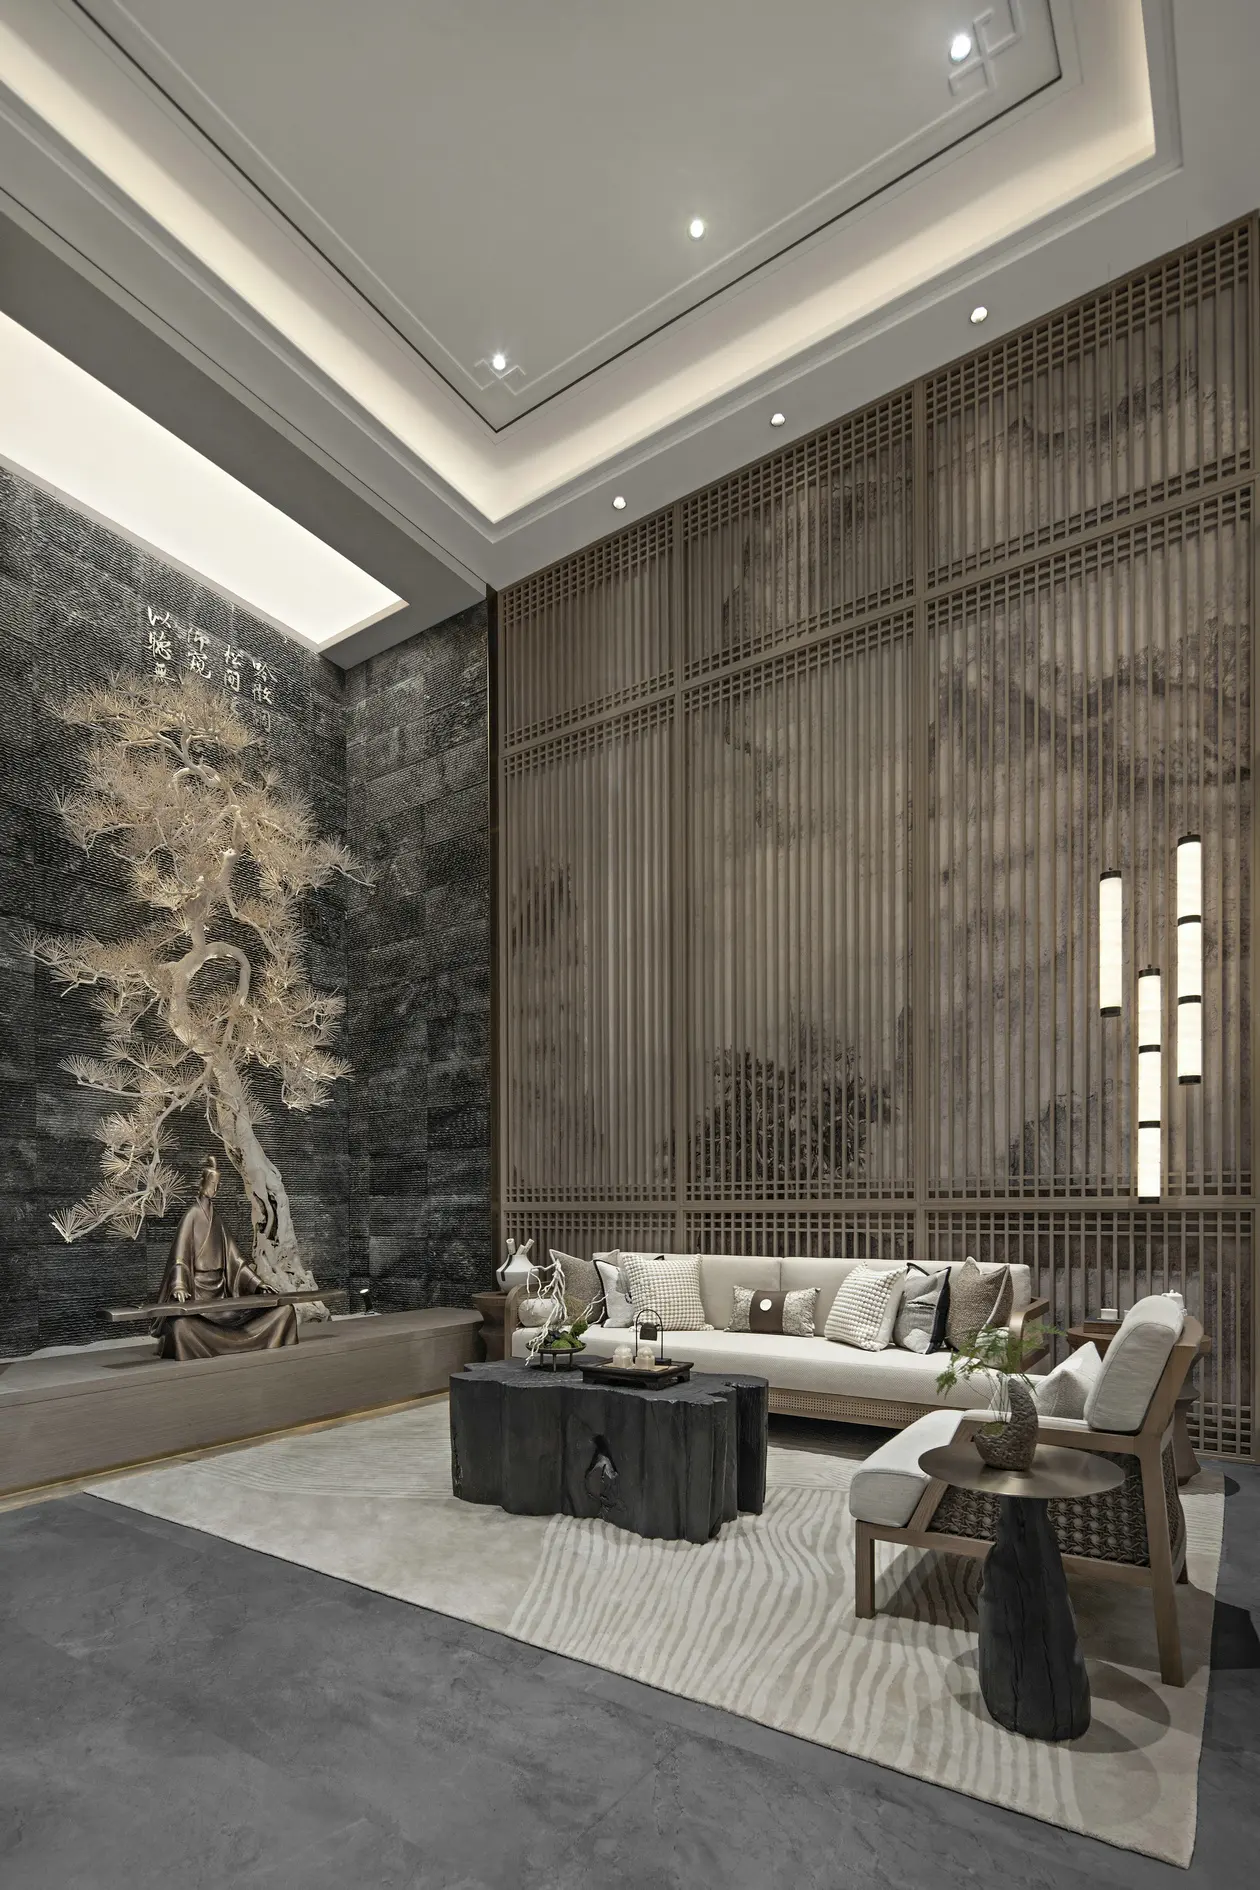 Contemporáneo residencial hotel de lujo presidencial servicios de diseño de interiores en 3D